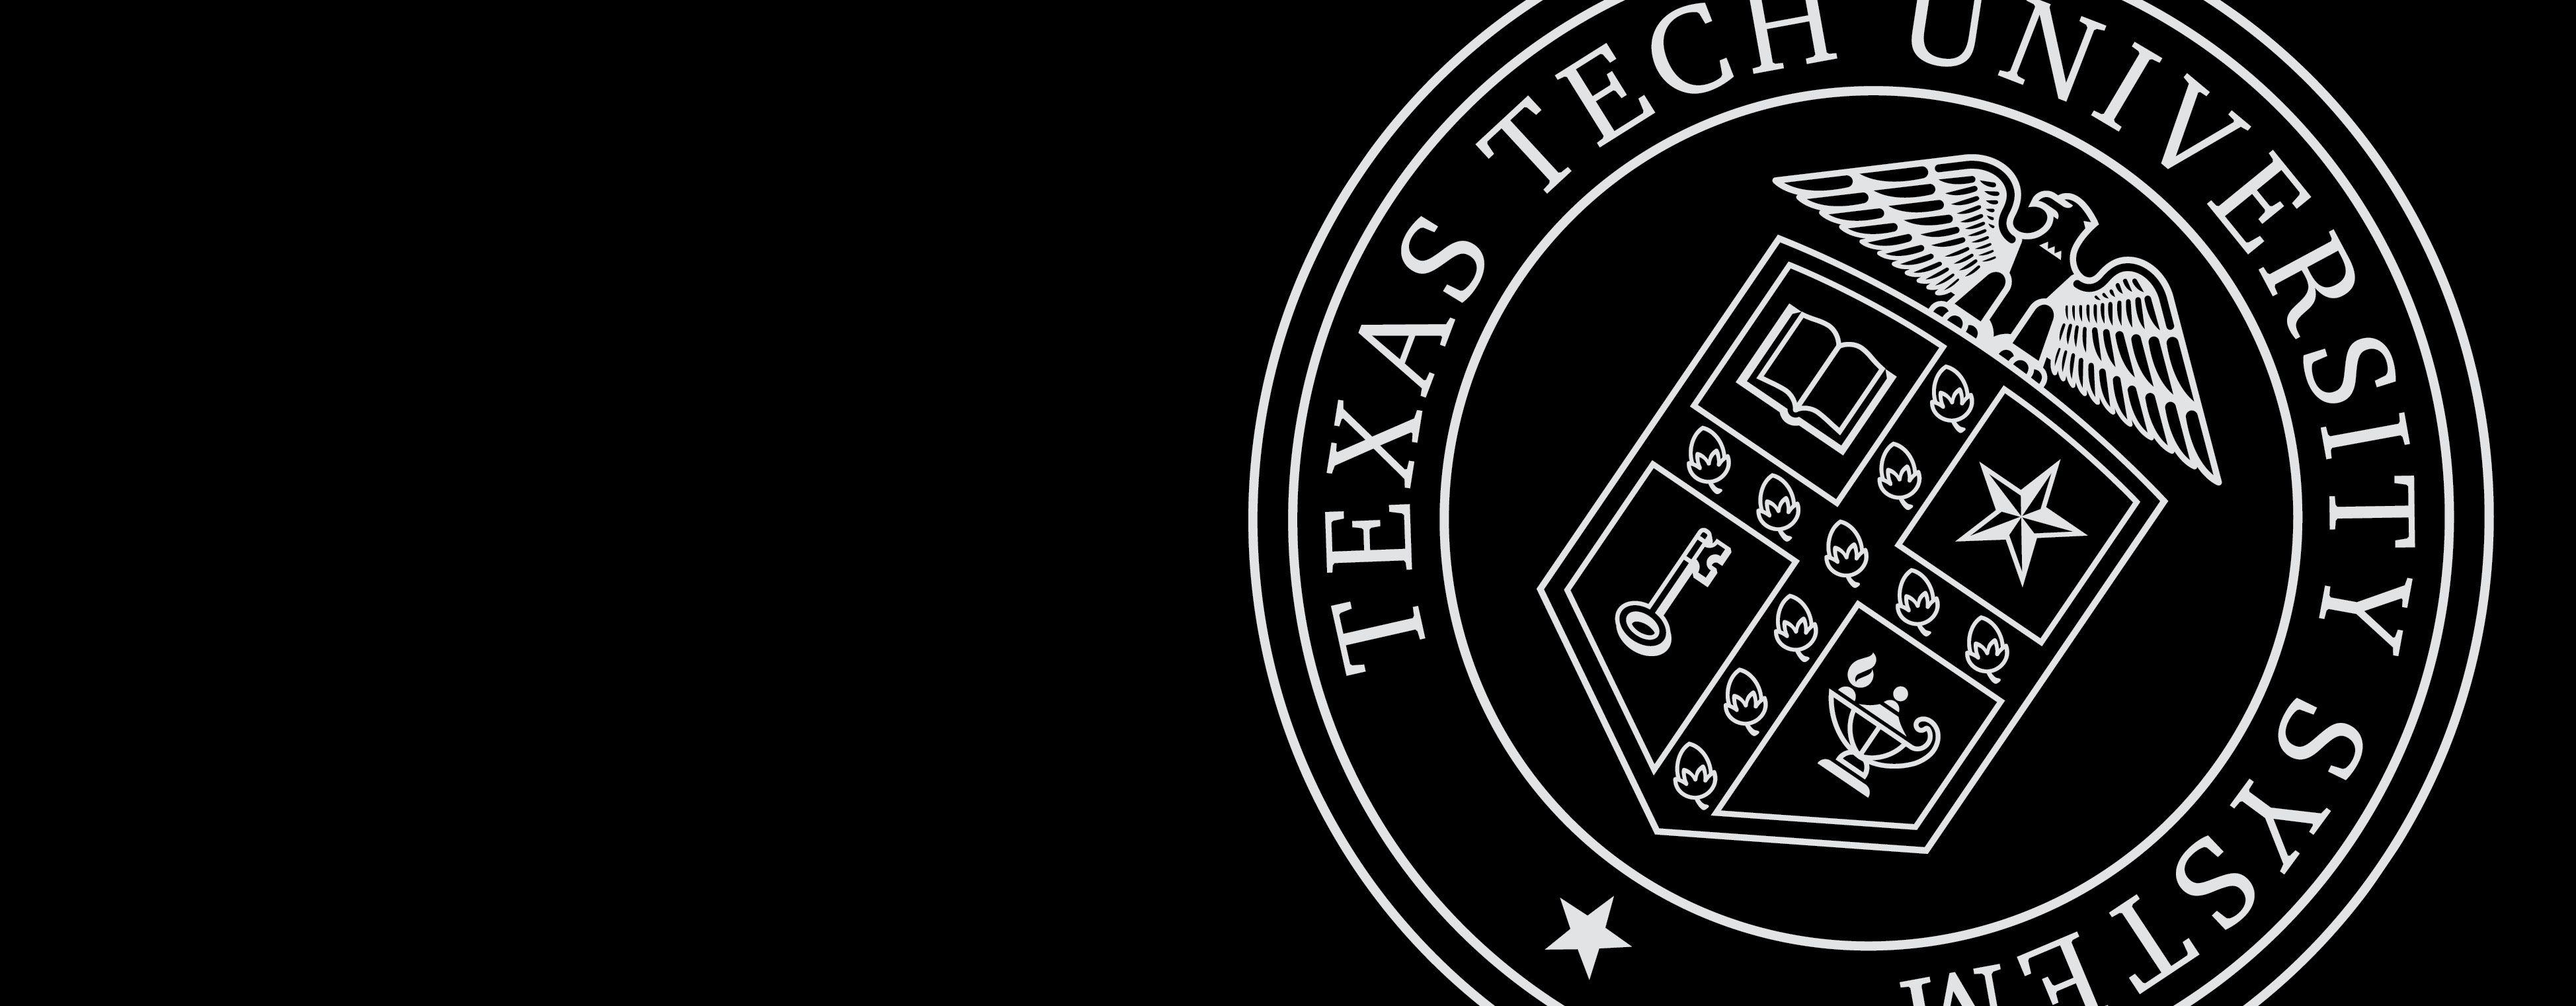 Texas Tech Logo - Texas Tech University System | Texas Tech University System